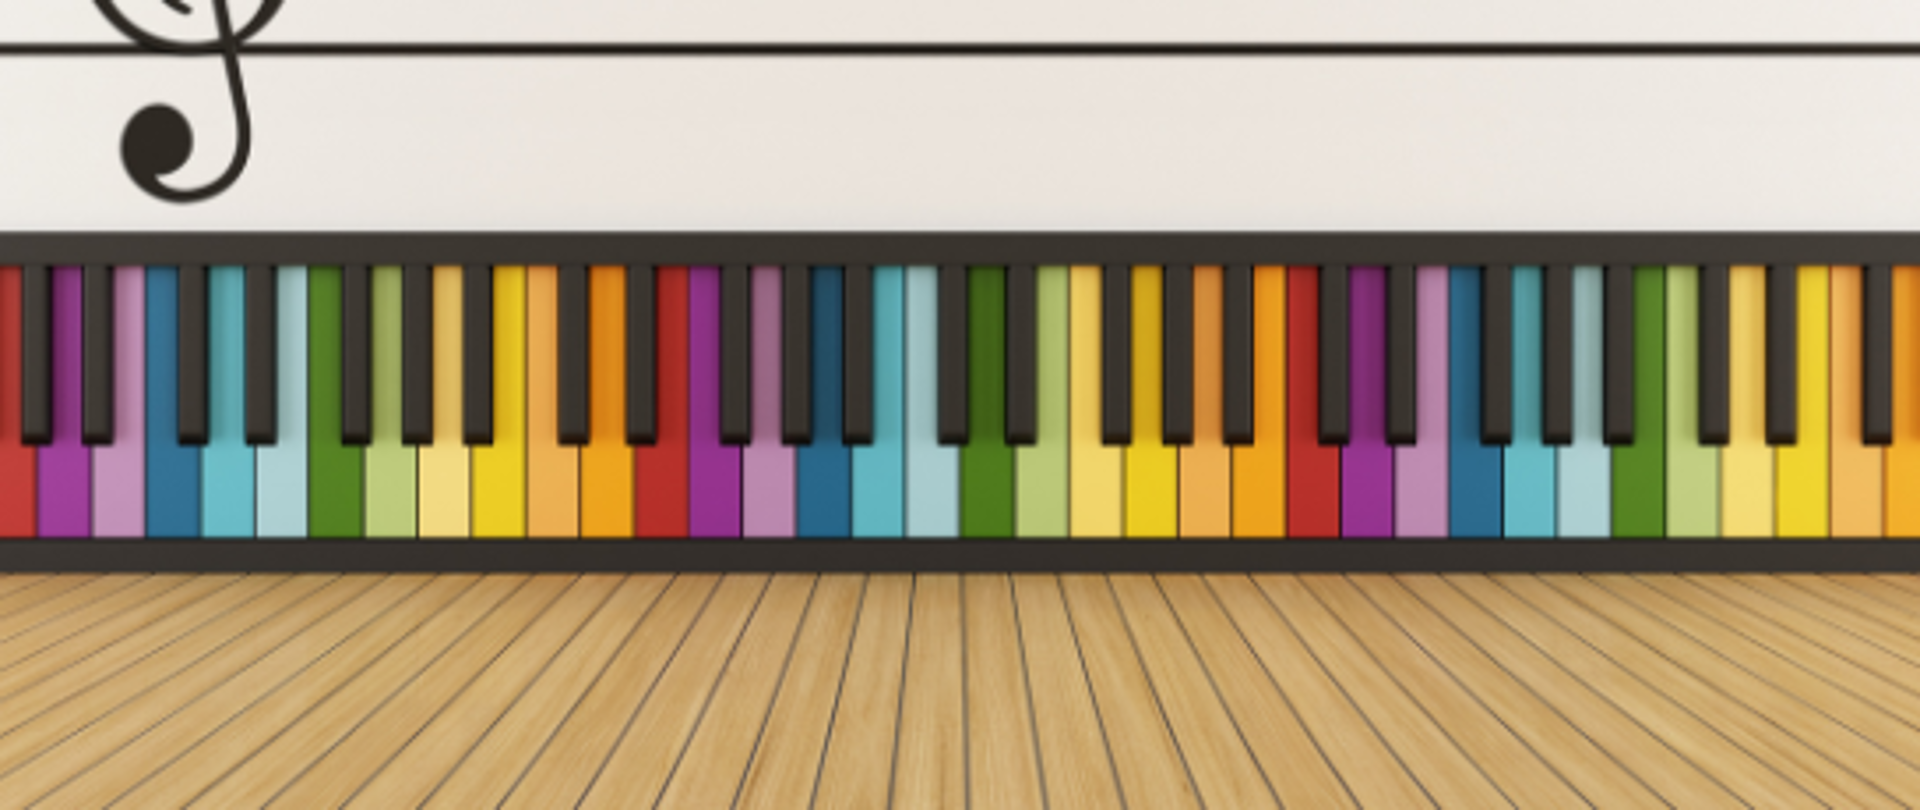 Obrazek przedstawia kolorowe klawisze fortepianu, a nad nimi pięciolinia z kluczem wiolinowym.